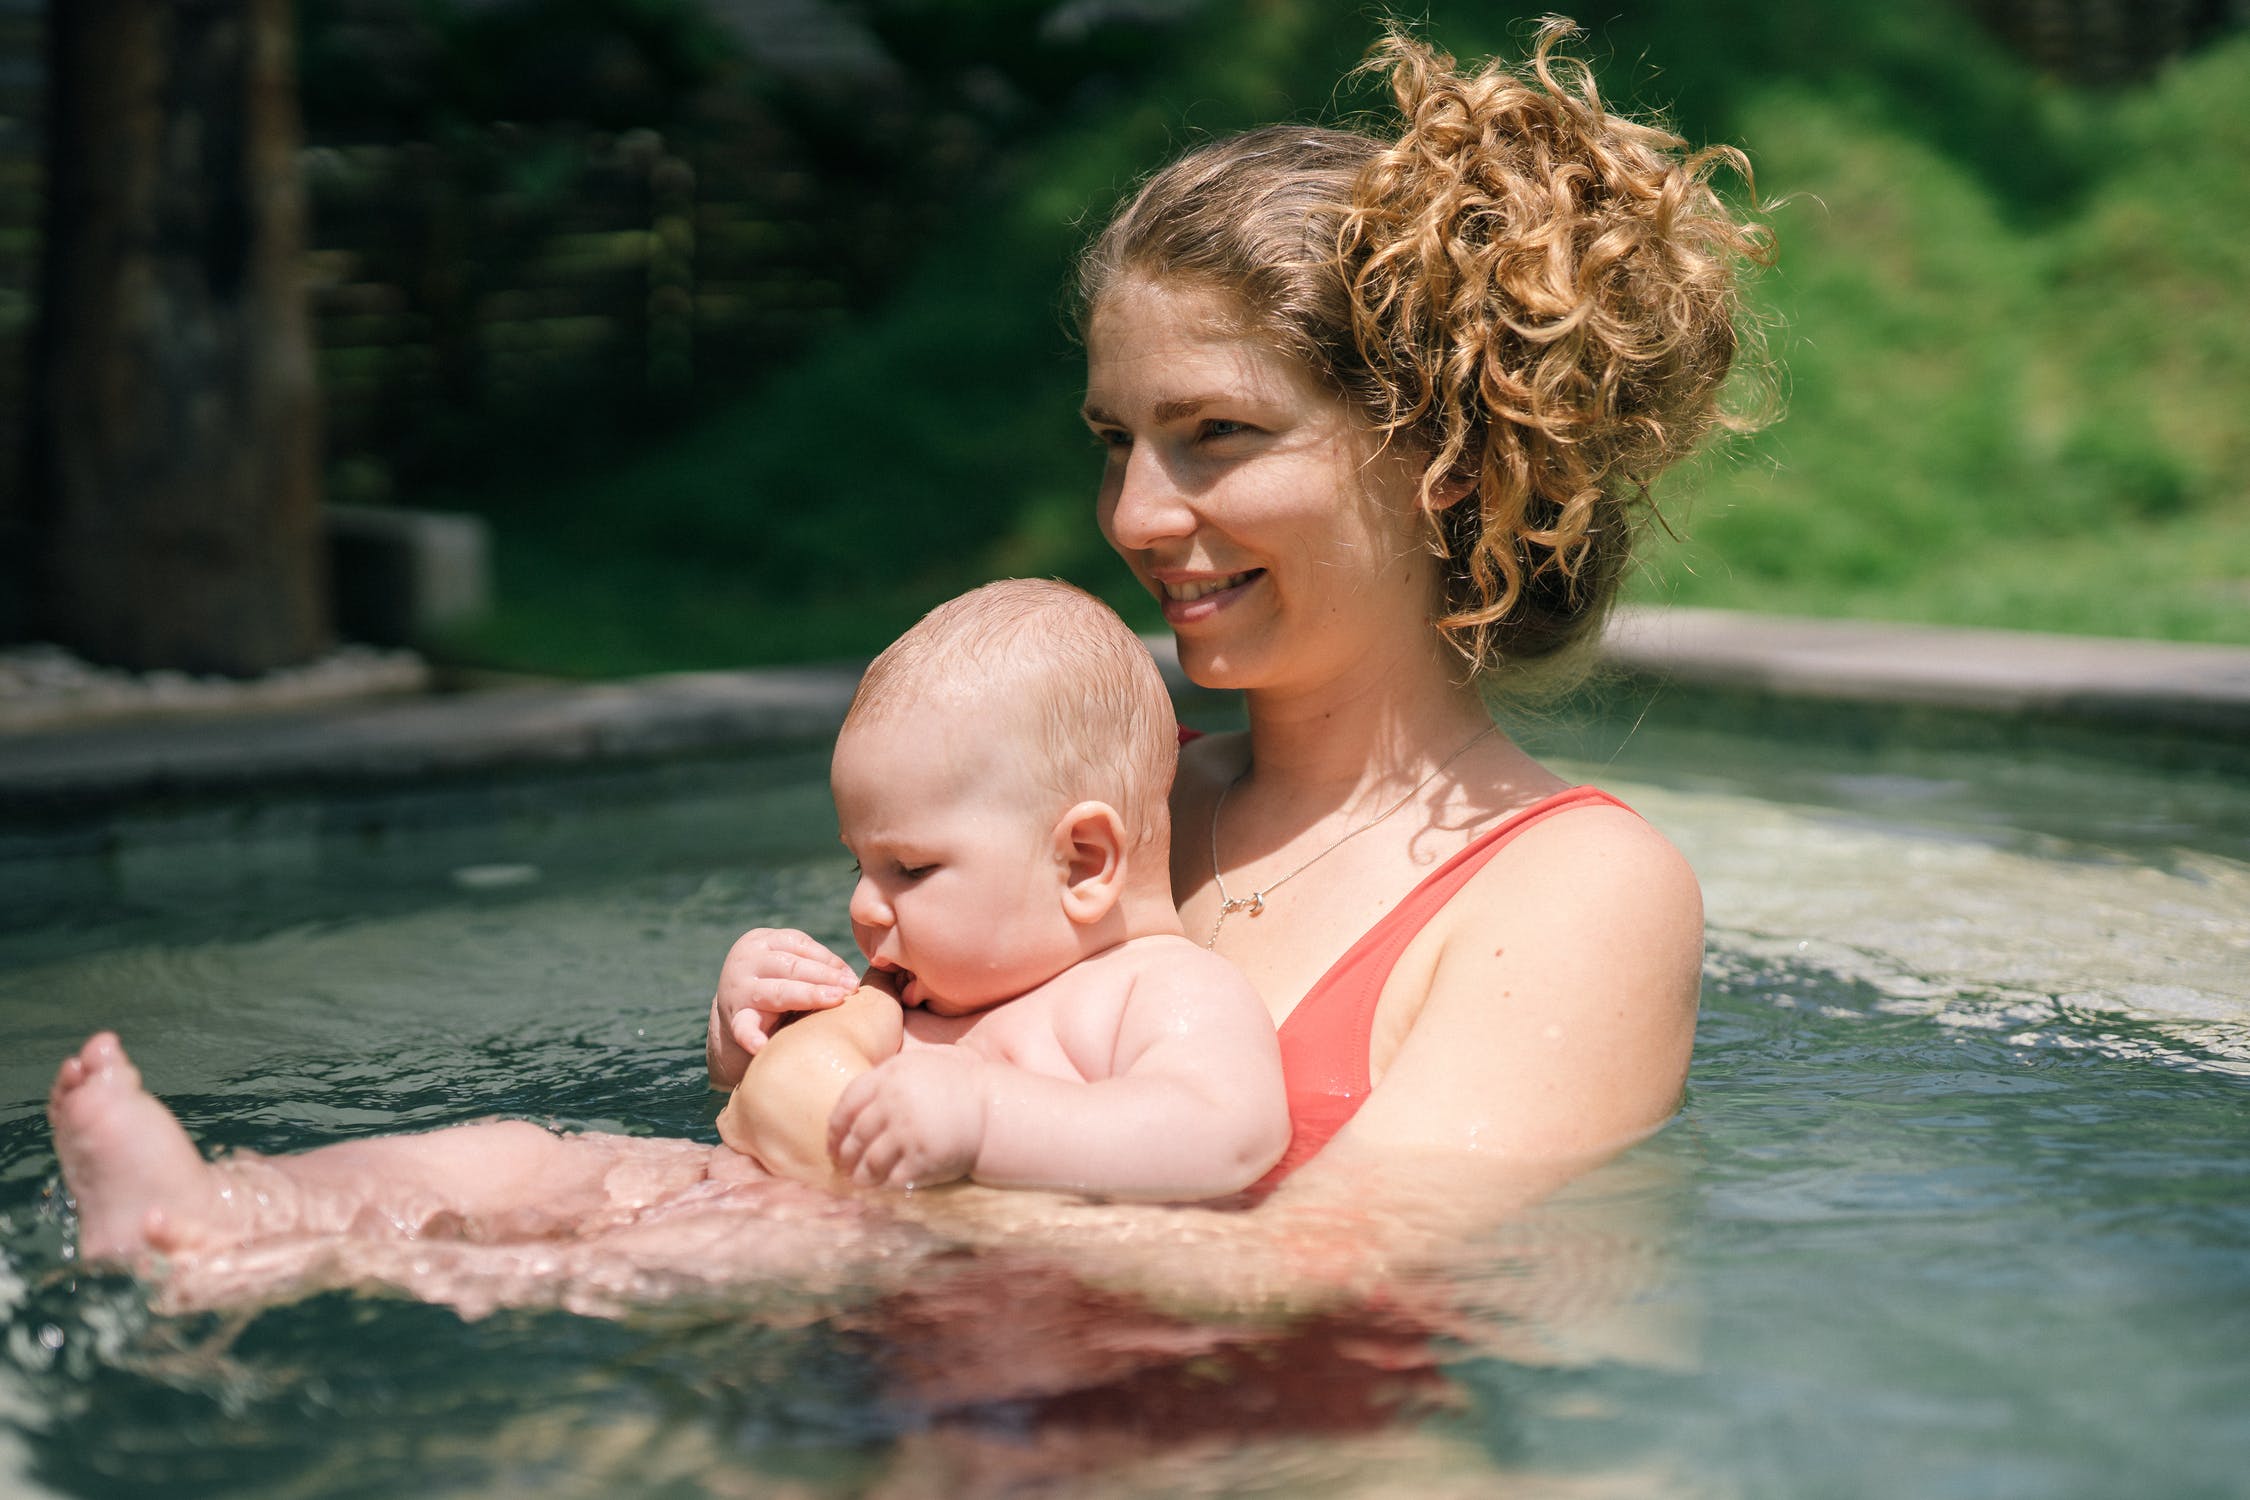 מדריכי שחיית תינוקות – מי מוסמך להעביר שיעור שחייה לפעוטות?